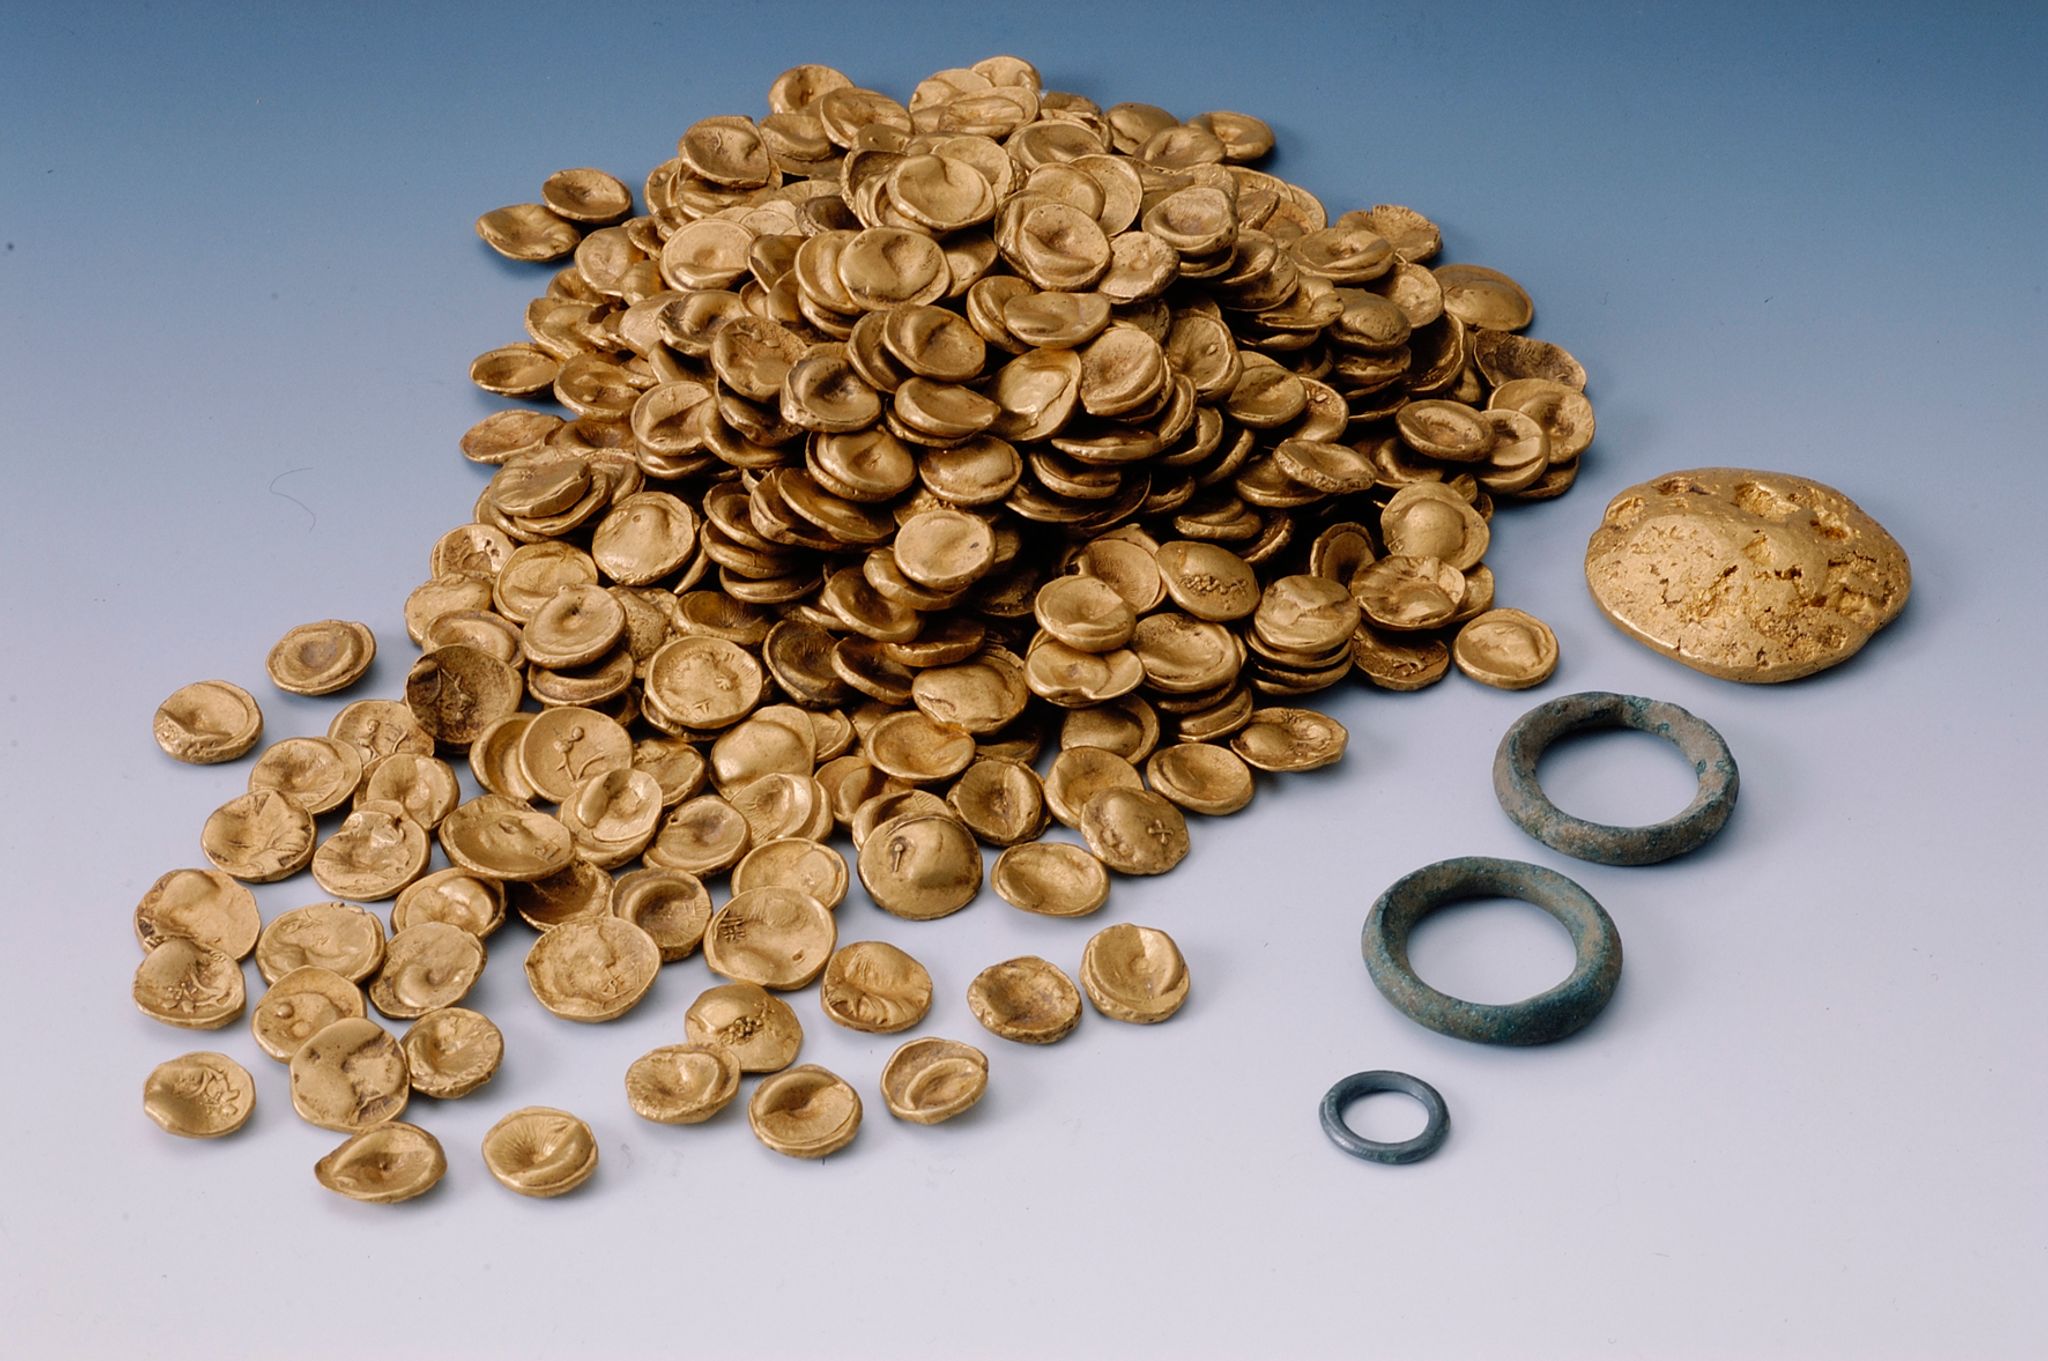 Keltische Goldmünzen. Der größte keltische Goldfund des 20. Jahrhunderts wurde 1999 bei Manching gefunden. Nun wurde der Goldschatz von Einbrechern gestohlen. (© ---/Archäologische Staatssammlung /dpa)